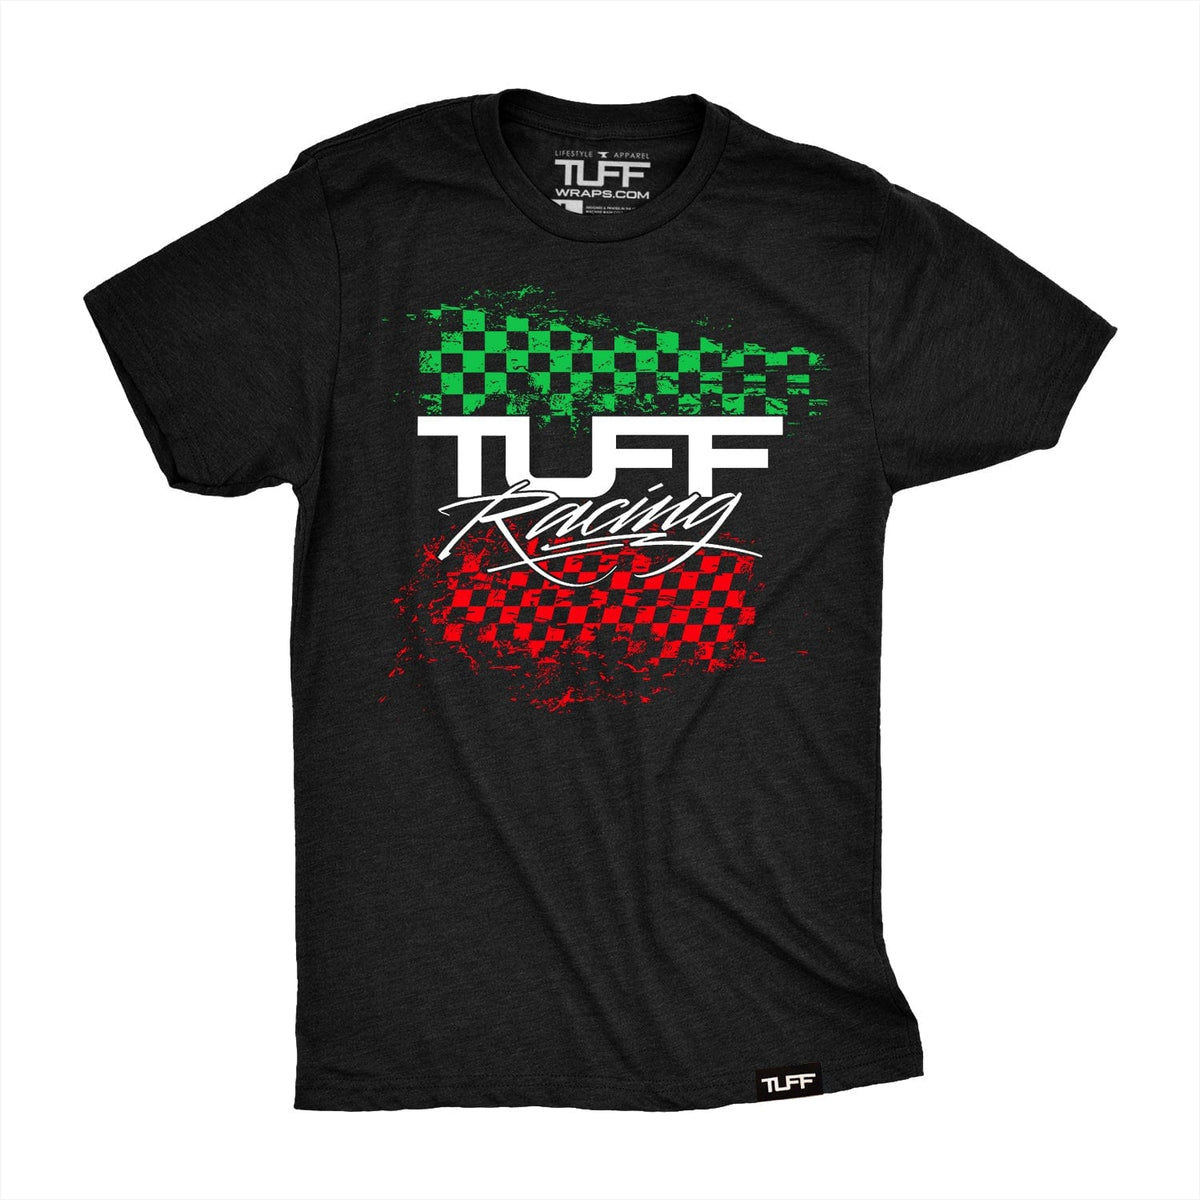 TUFF Racing Tee TuffWraps.com